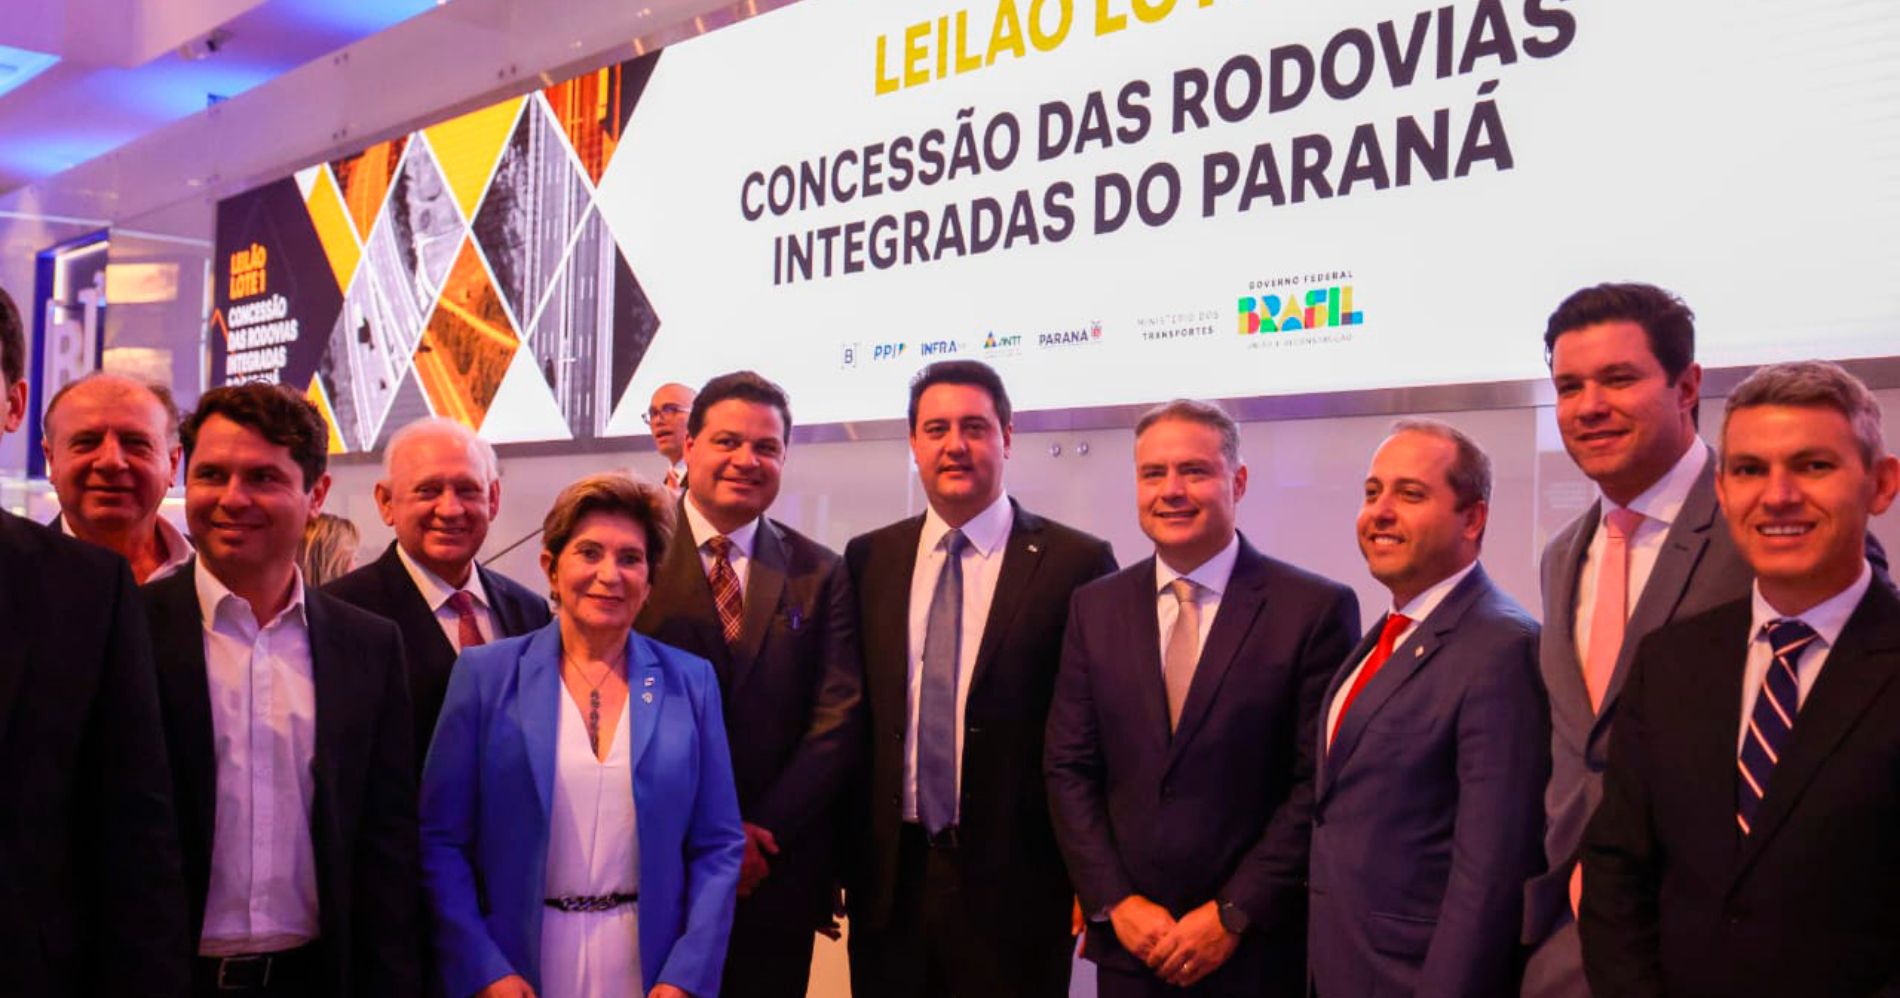 Grupo Pátria vence leilão de rodovias no Paraná com desconto de 18,25%